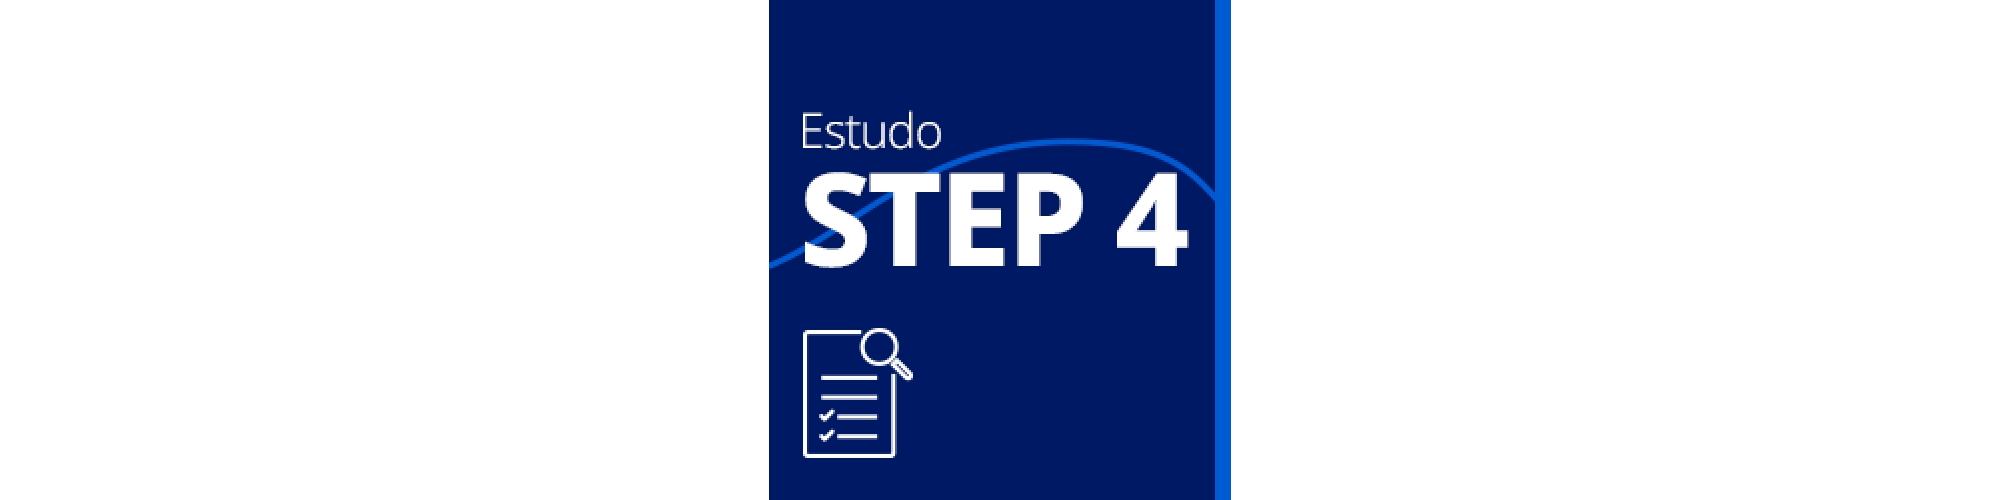 Estudo STEP4